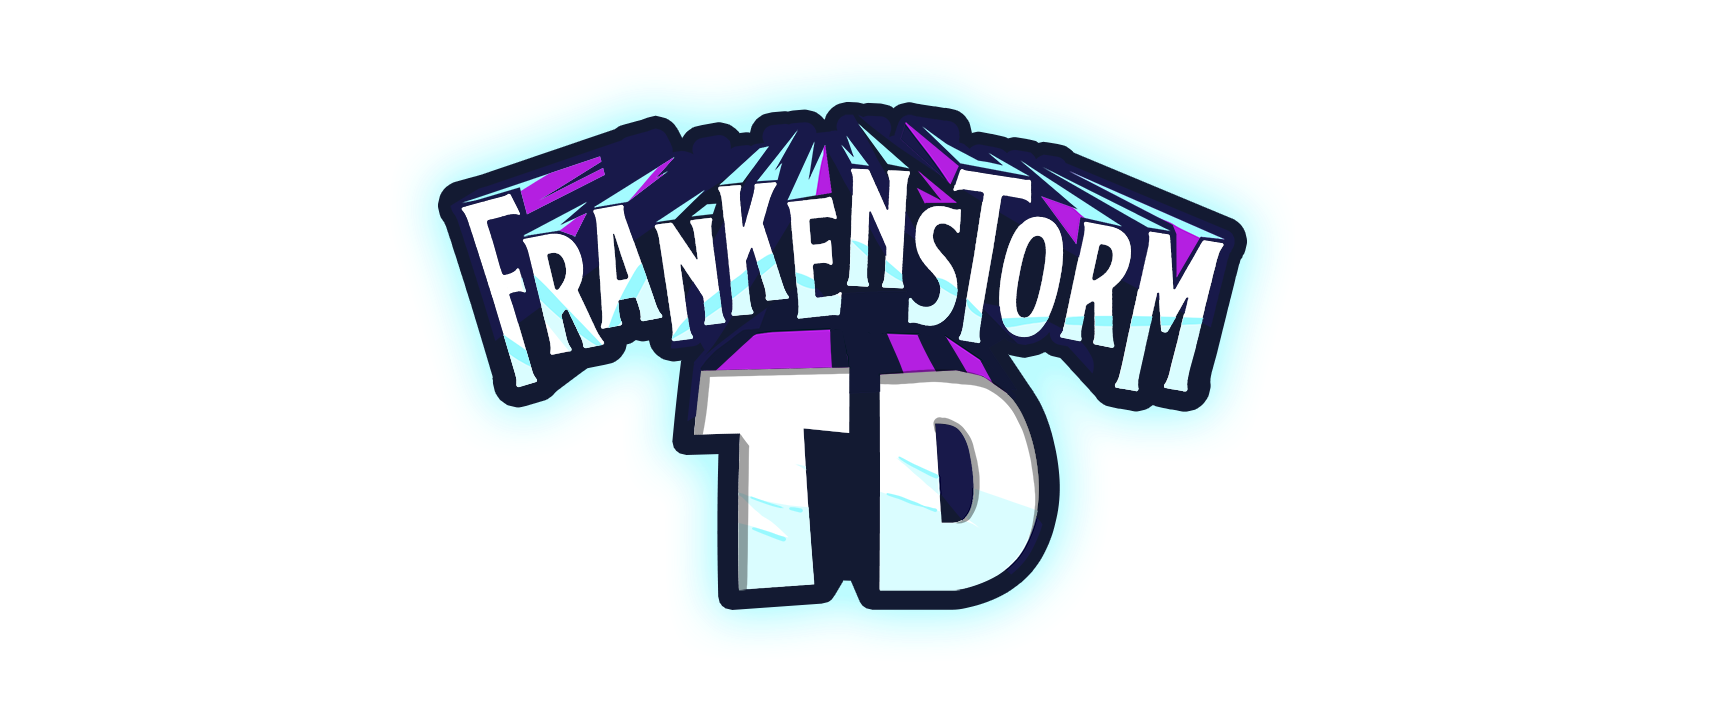 FrankenStorm TD Logo